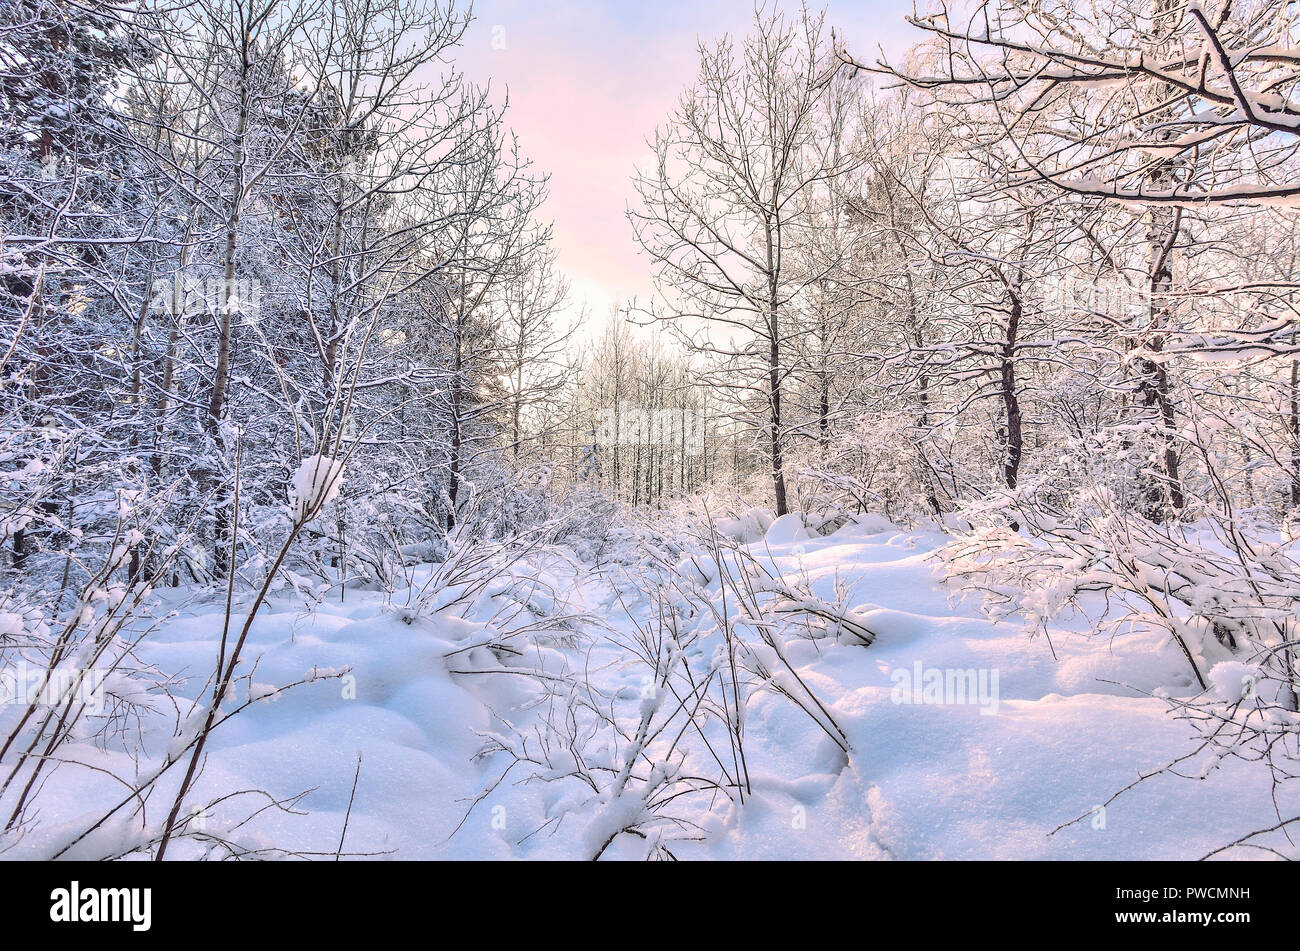 La bellezza della natura invernale - la favola dei boschi innevati, tinta di rosa di inverno mattina su bianco tronchi di betulle, snowy pini,abeti e boccole - il pupazzo di neve Foto Stock